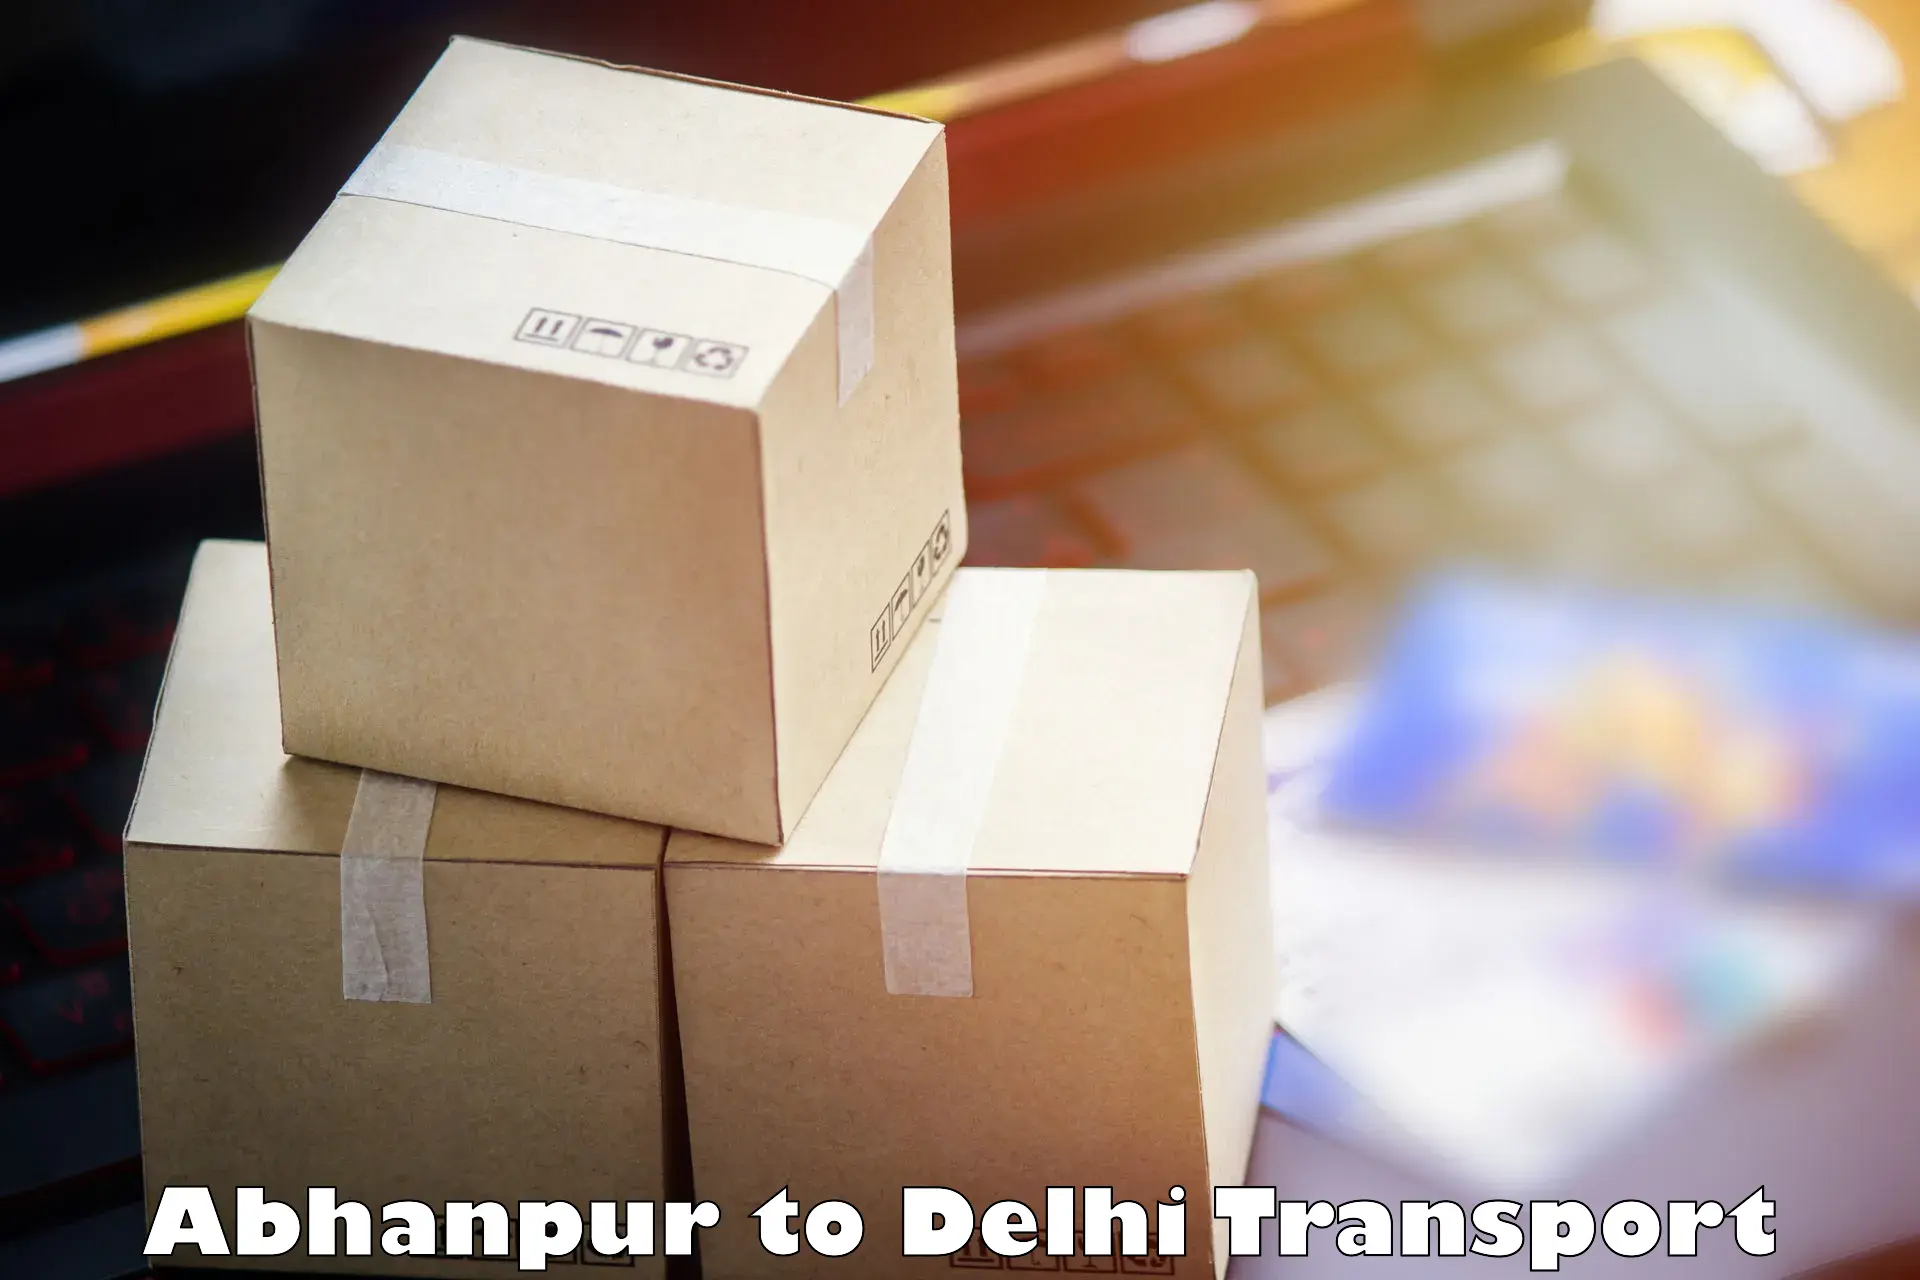 Nearest transport service Abhanpur to Ramesh Nagar